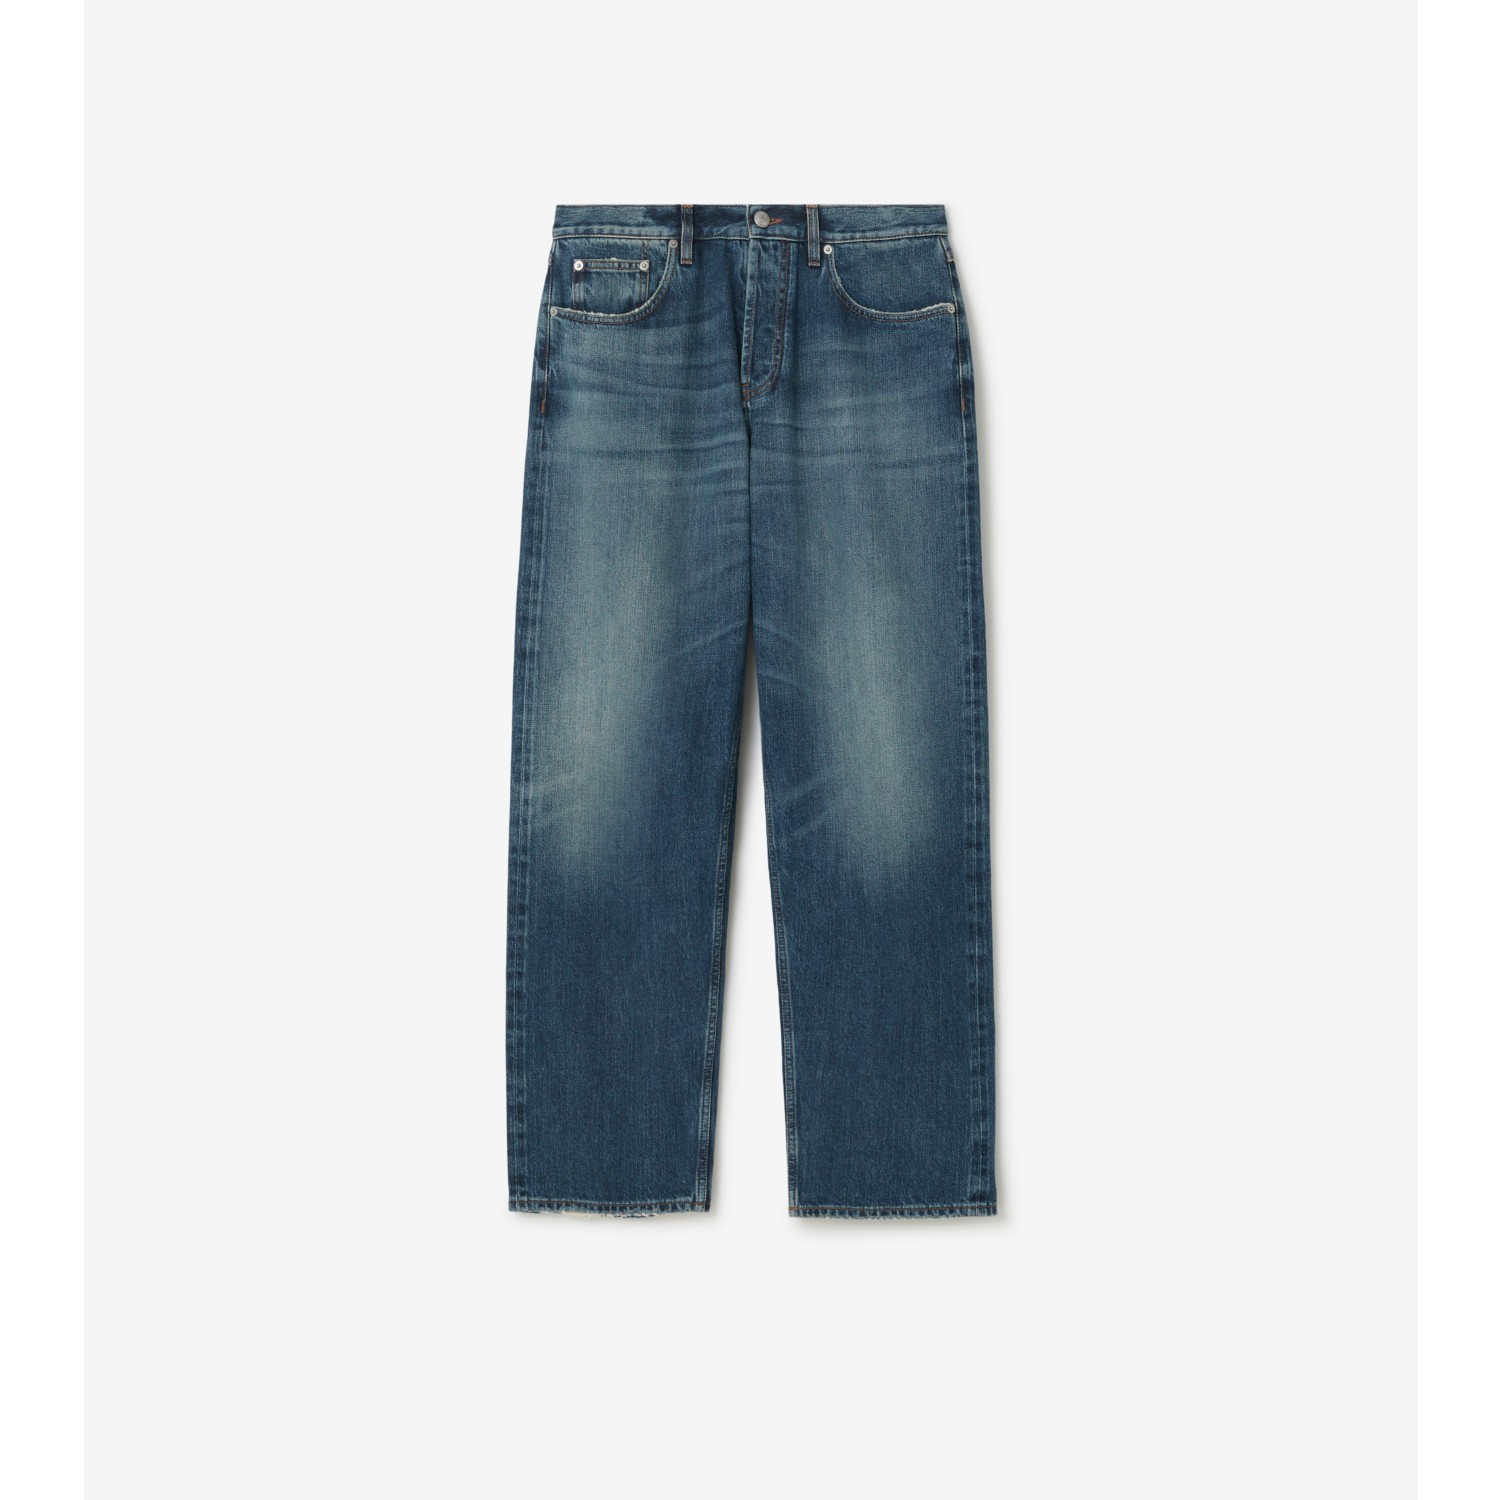 Vintage Washed Five-Pocket Denim, Men's Pants